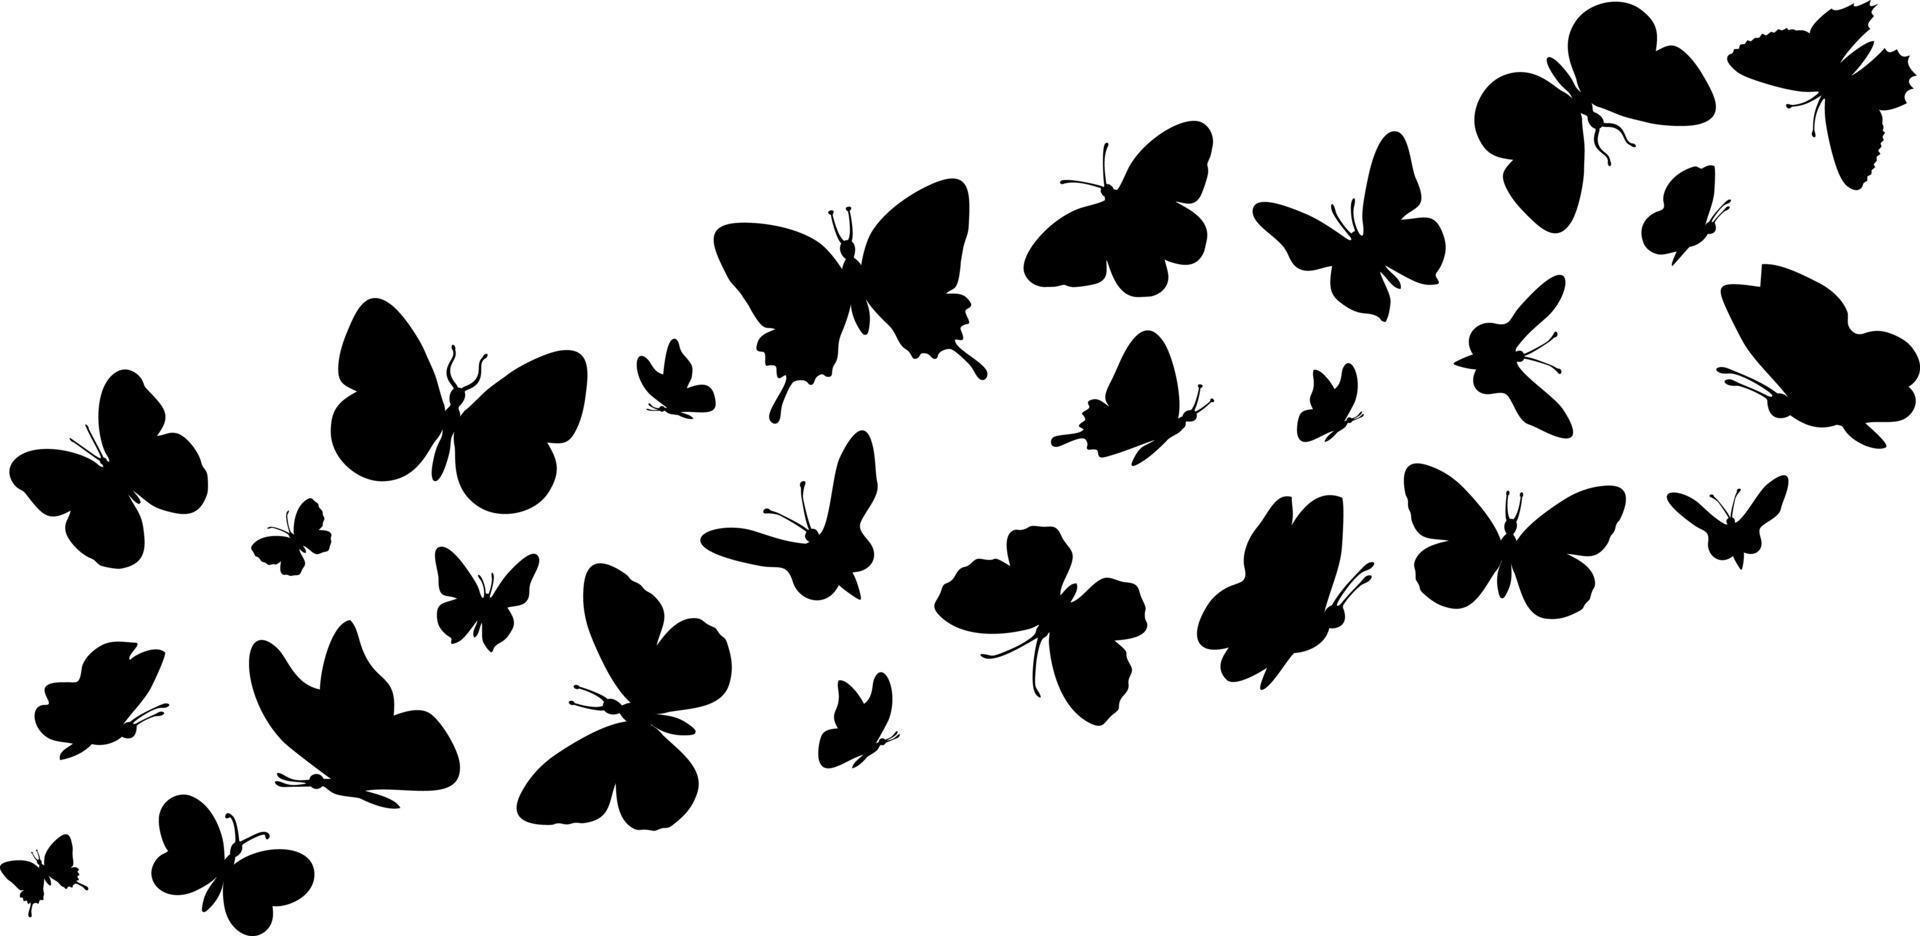 vliegende vlinders silhouetten. vlinders in de vlucht. vlinder naadloze grens. zwarte woud en tuin insecten vector illustratie. decoratieve elementen op wit voor ontwerp